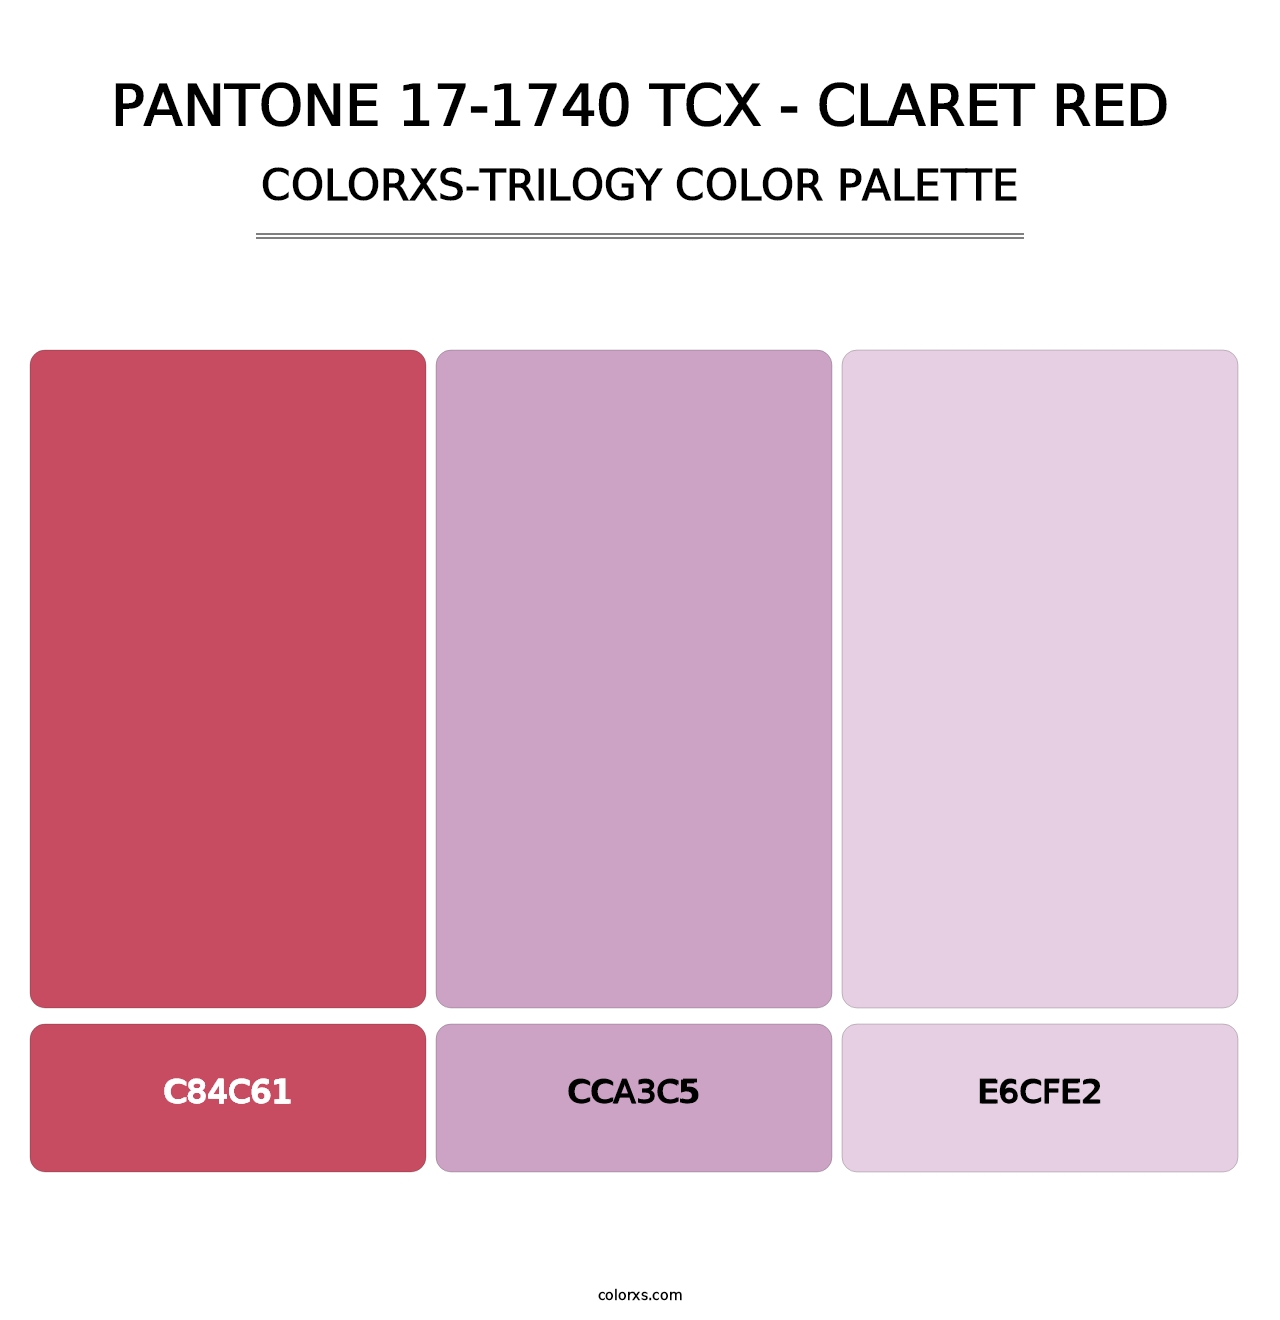 PANTONE 17-1740 TCX - Claret Red - Colorxs Trilogy Palette